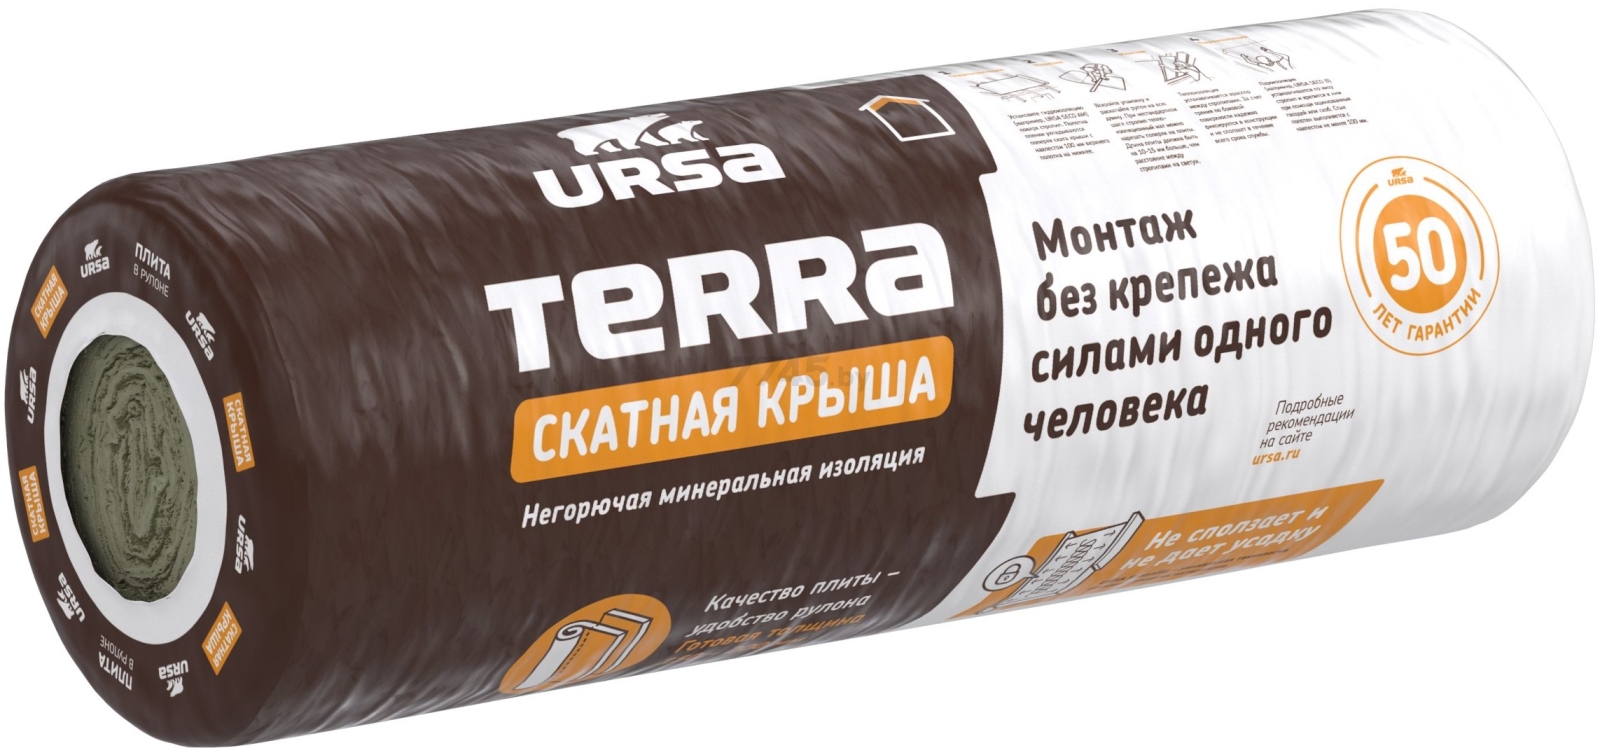 Утеплитель рулонный минвата URSA Terra 35 QN Скатная крыша 3900х1200х150 мм упаковка (2096684)